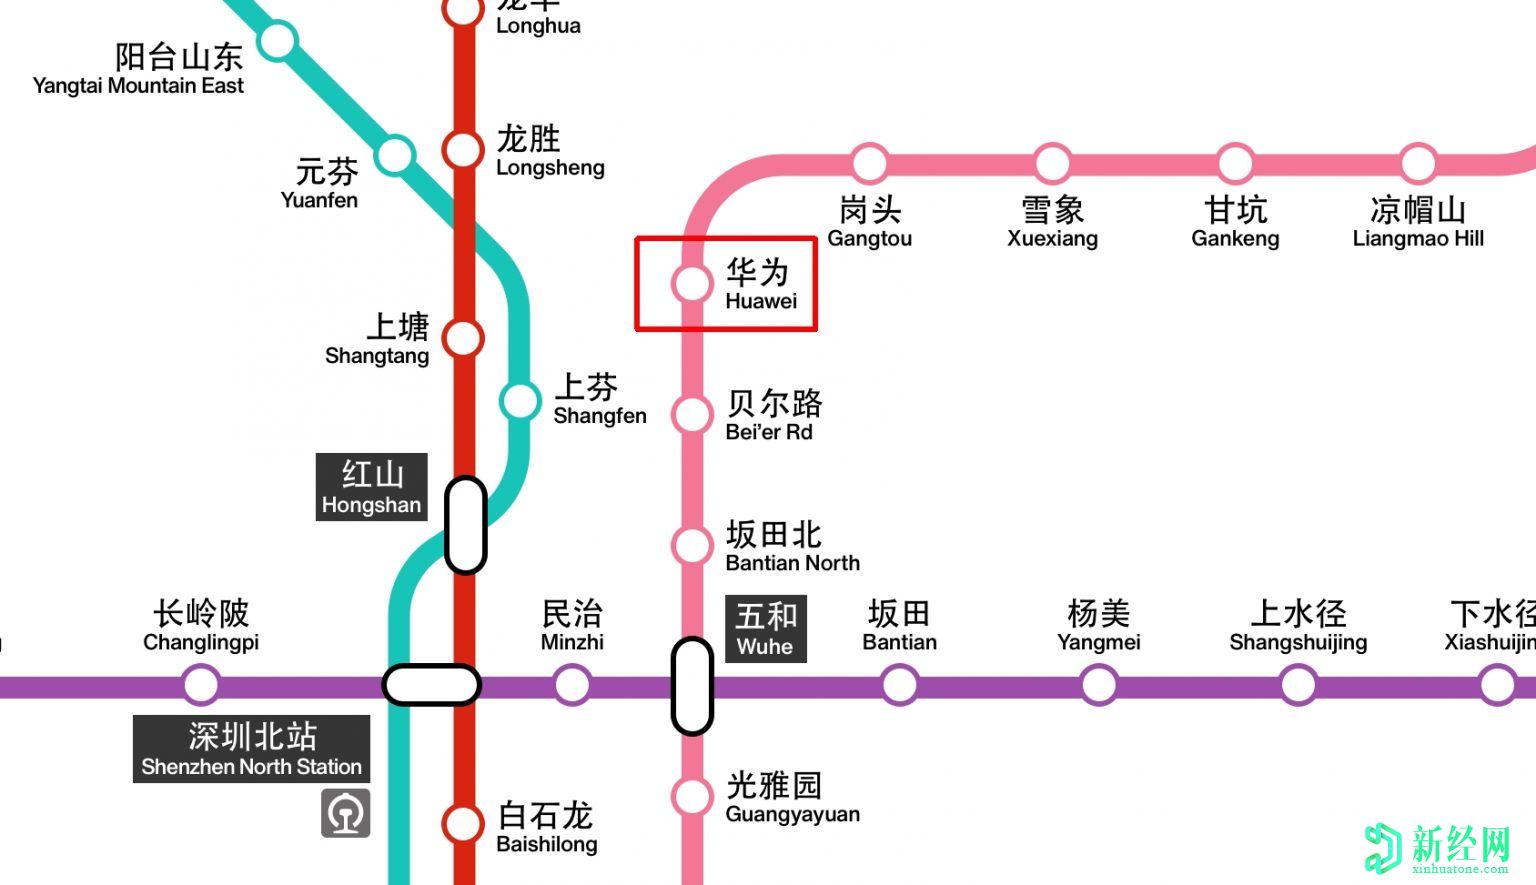 华为现在在深圳的新地铁线中有一个以它命名的车站